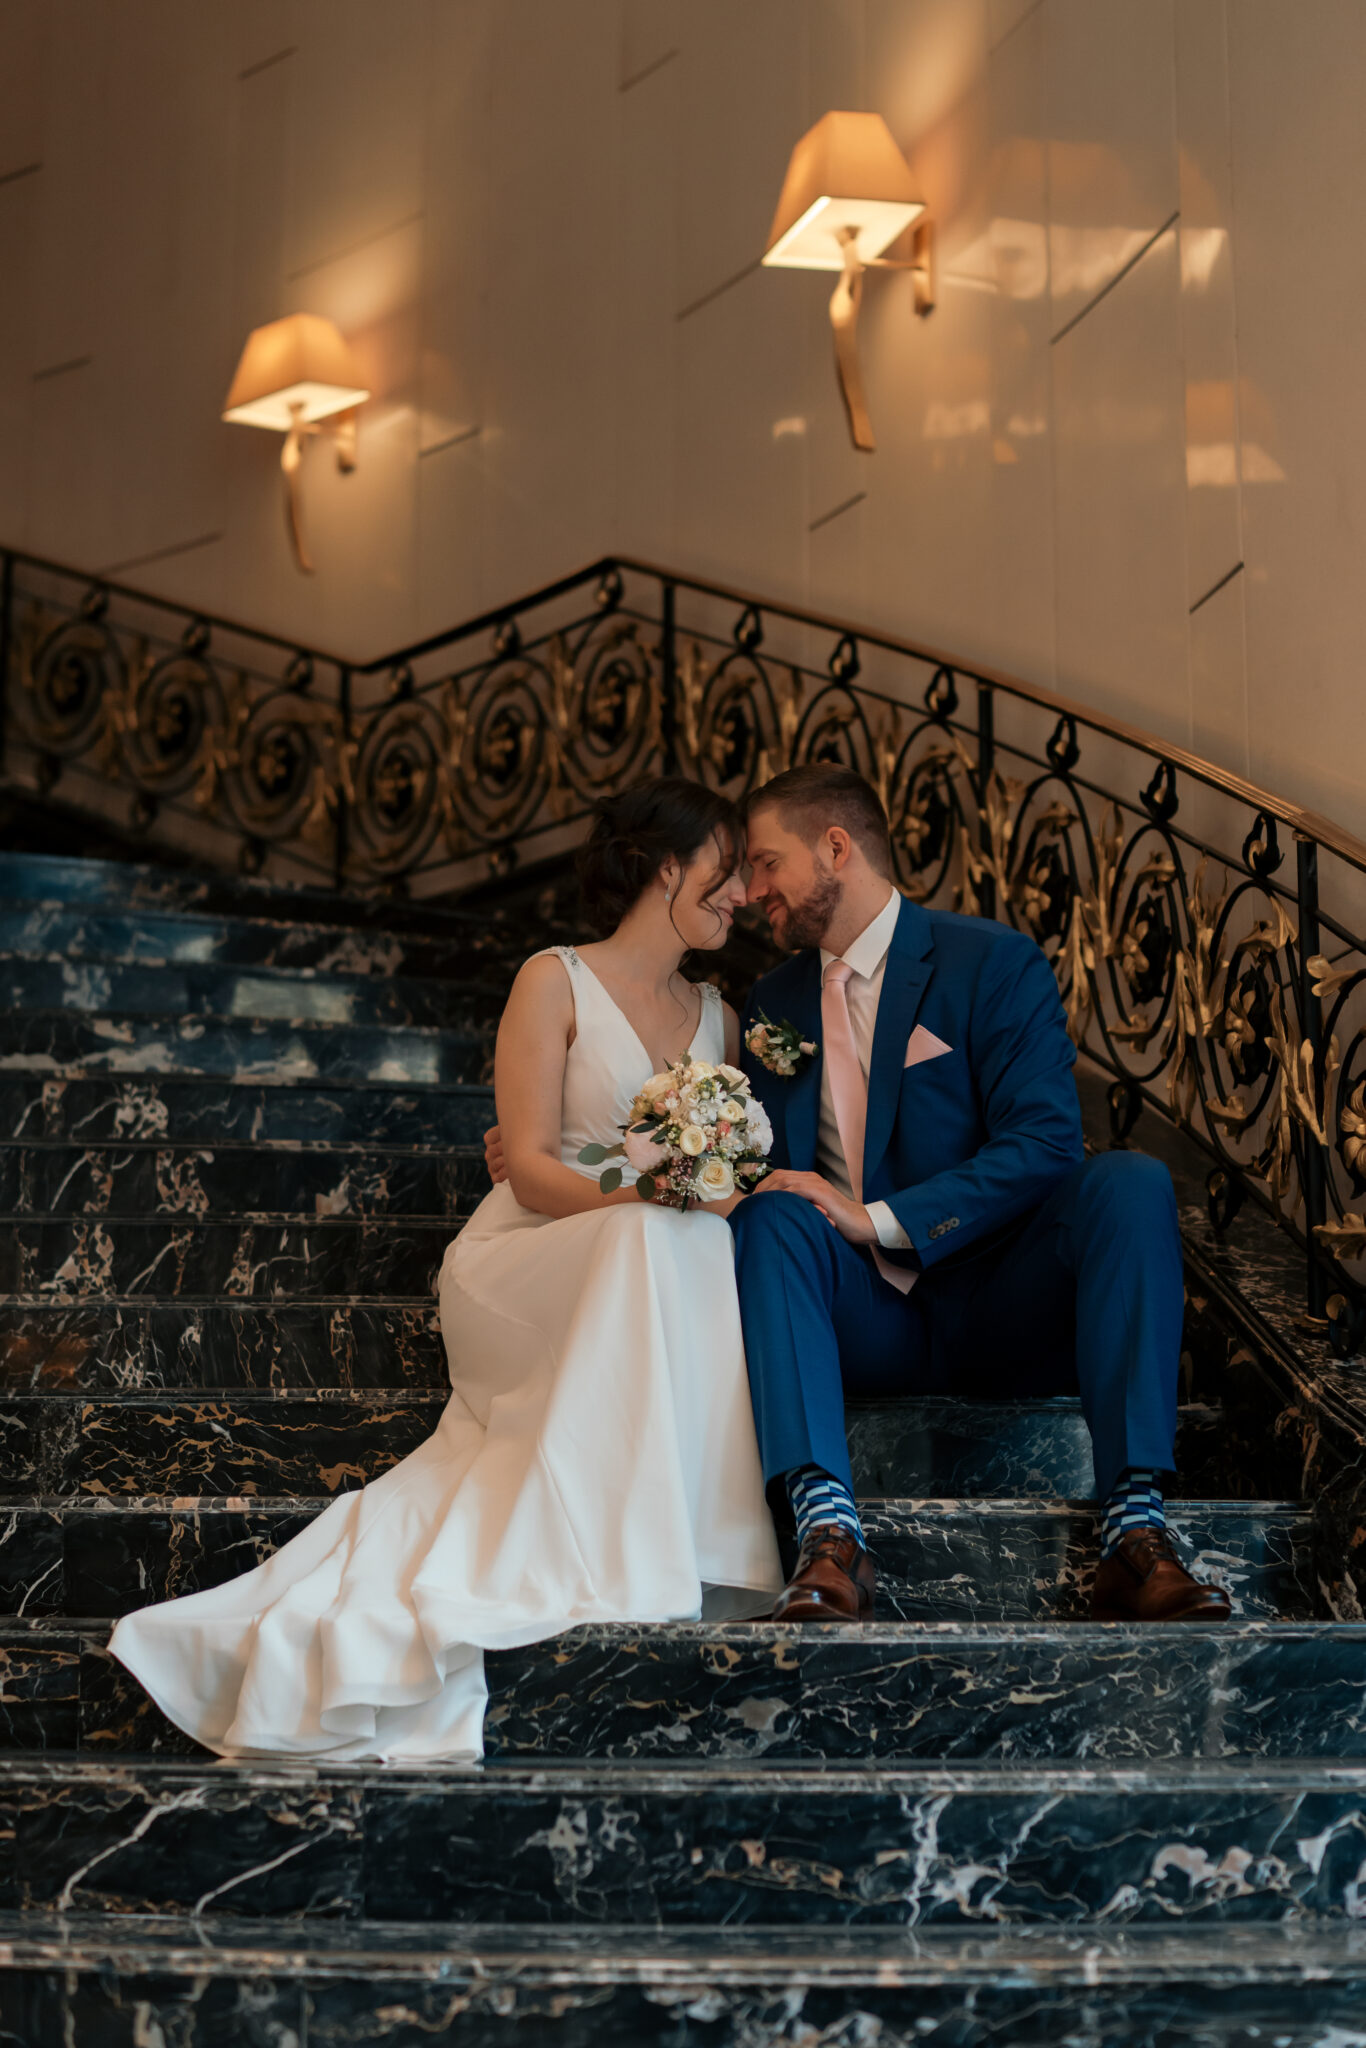 Hochzeitsfotos auf einer Treppe